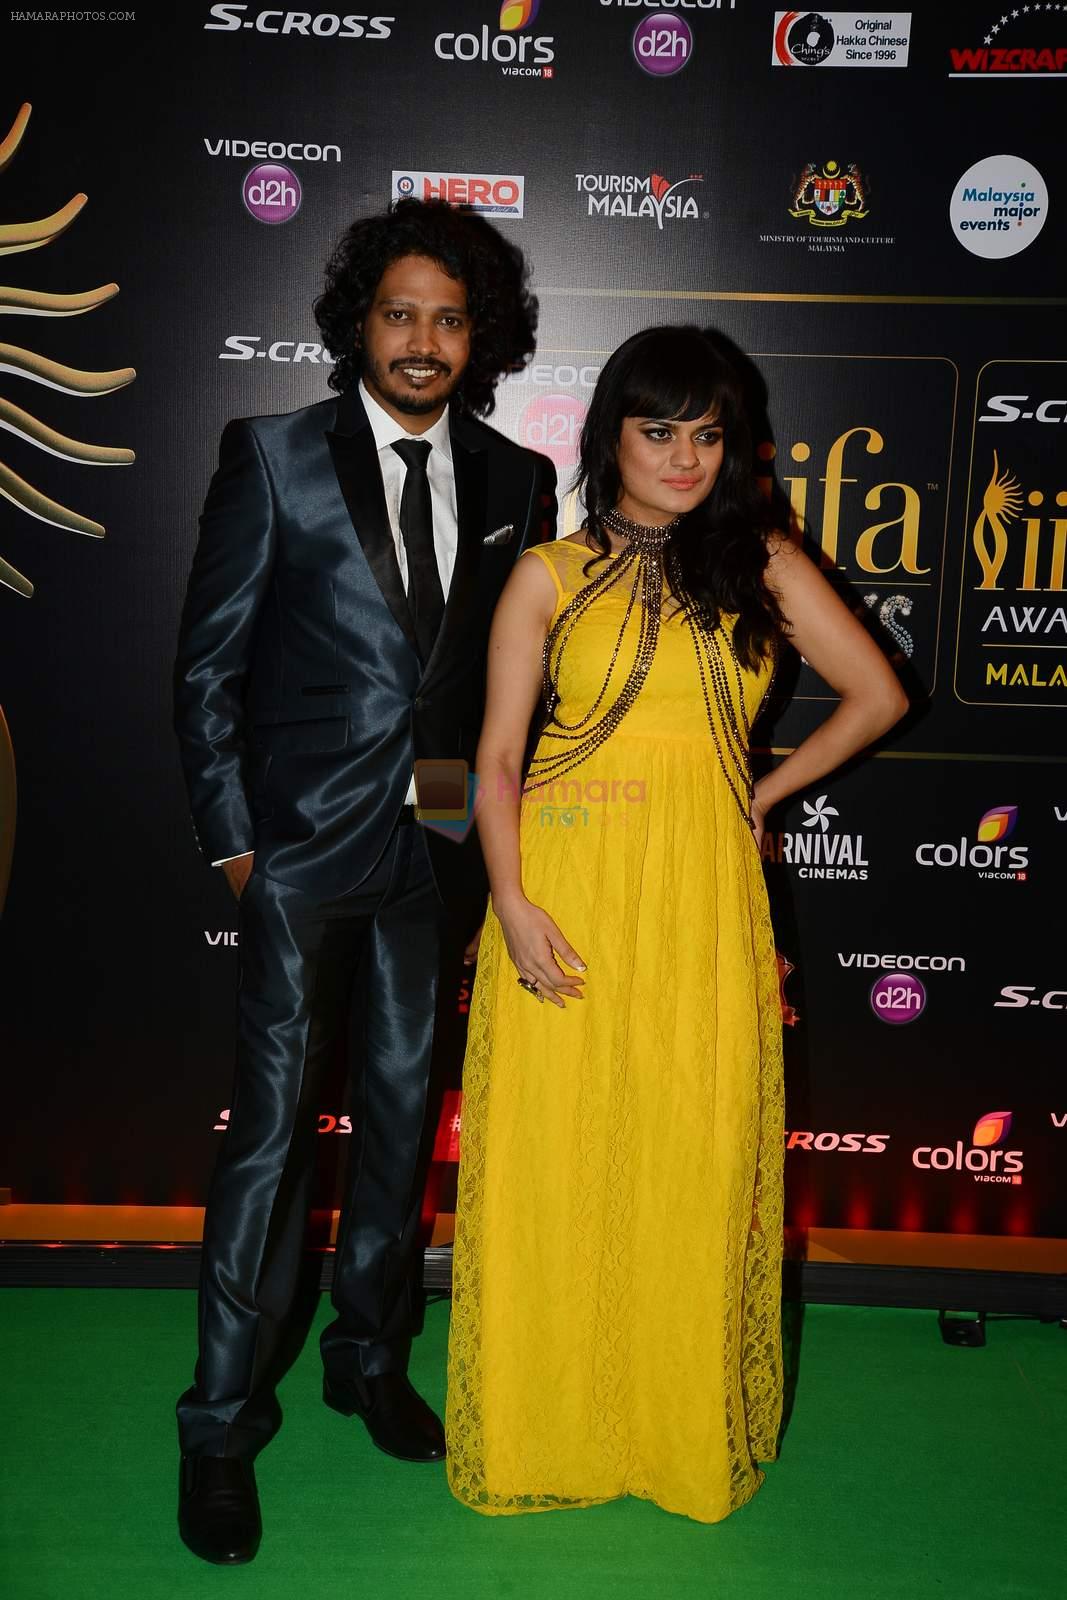 Aditi Singh Sharma at IIFA Awards 2015 in Kuala Lumpur on 5th June 2015